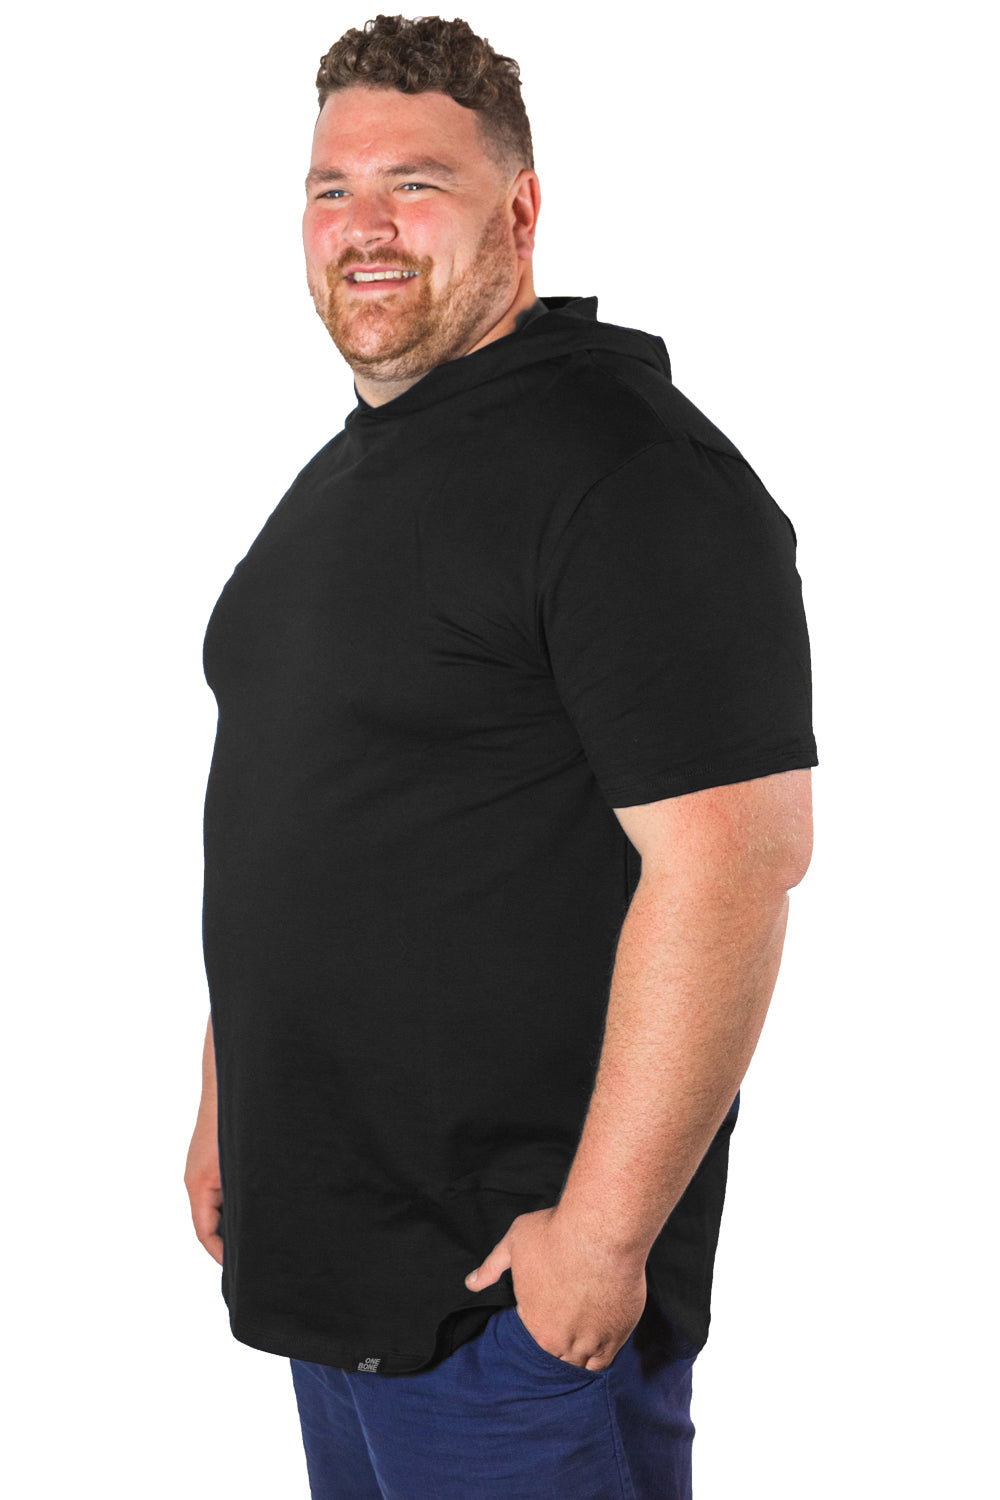 model-specs: Brandon is 6’3" | 350 lbs | size 3